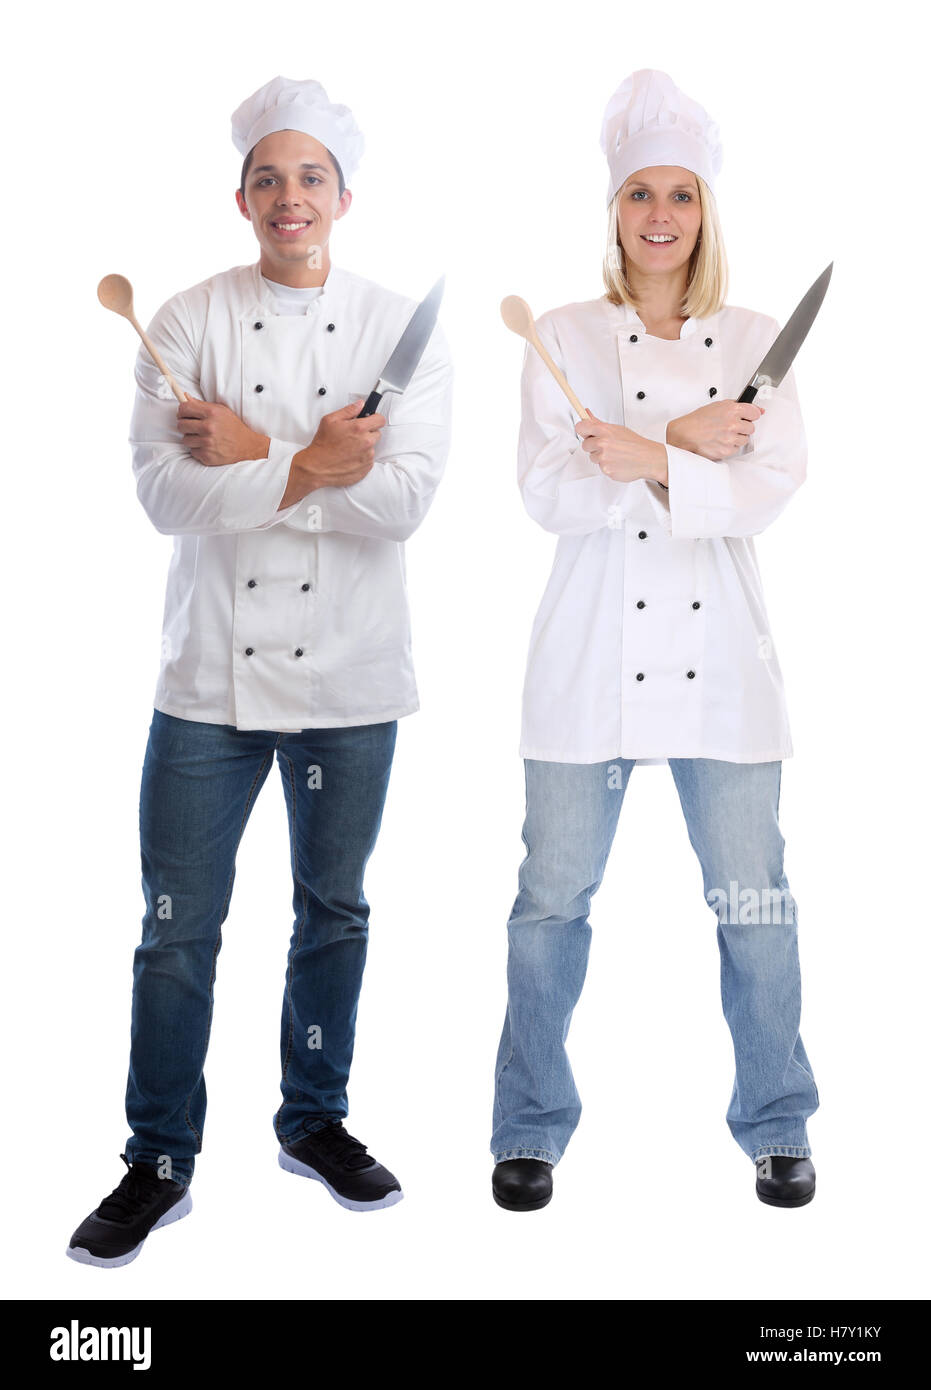 Koch Lehrling Auszubildende Auszubildende Köche stehen Ganzkörper Kochen mit Messer Job jung isoliert auf weißem Hintergrund Stockfoto